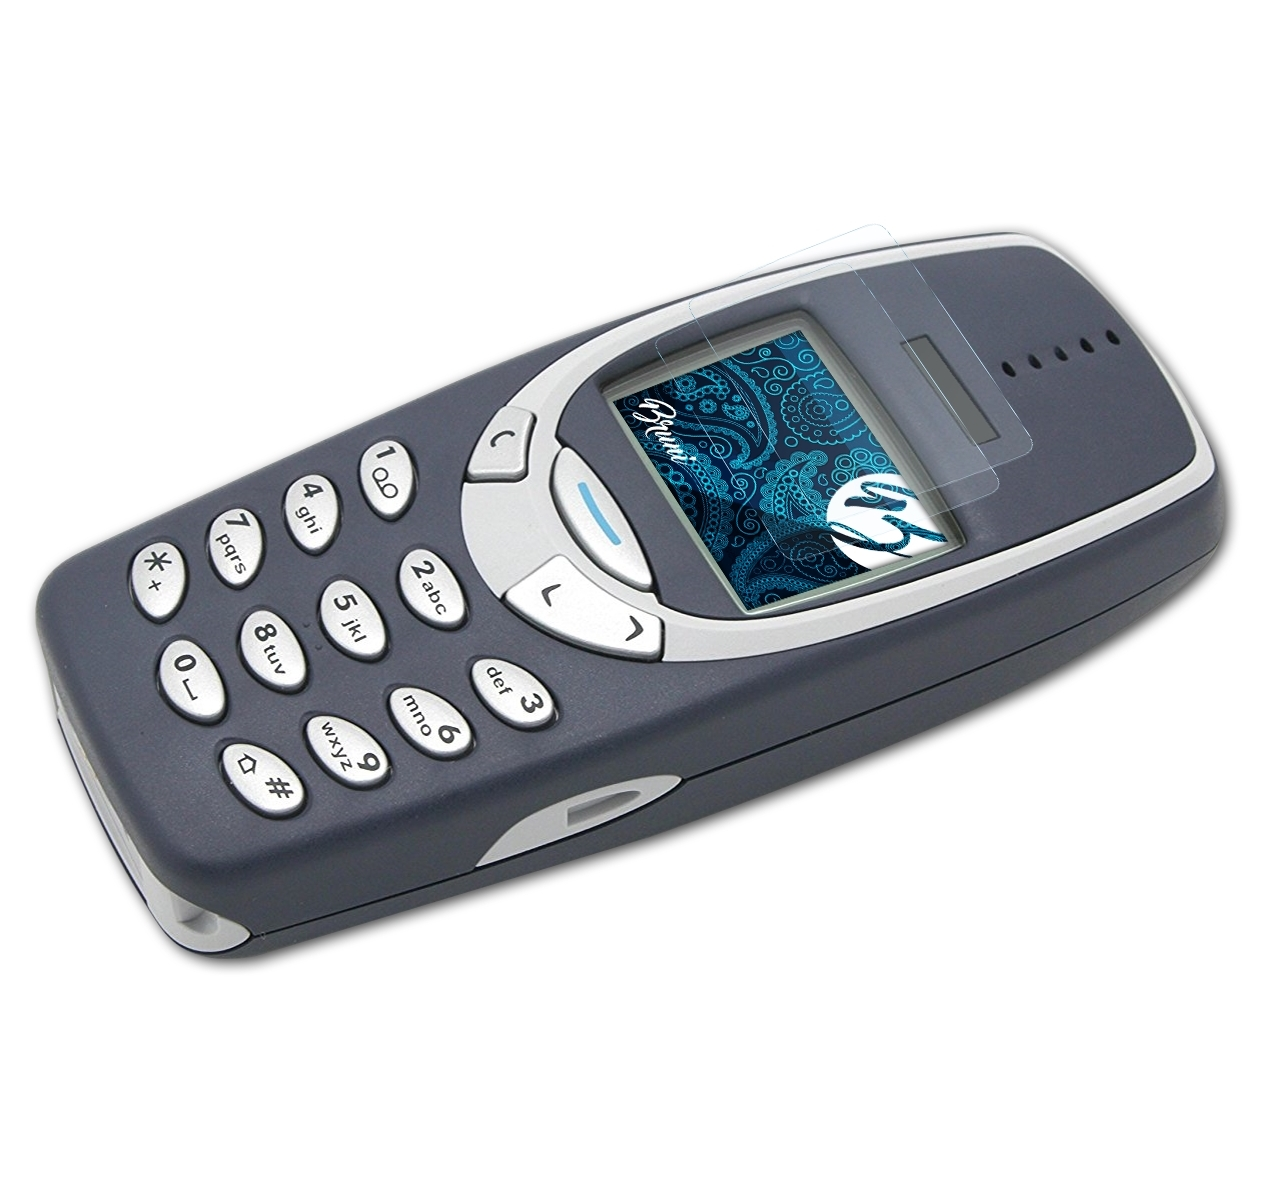 3310) 2x Basics-Clear Nokia Schutzfolie(für BRUNI